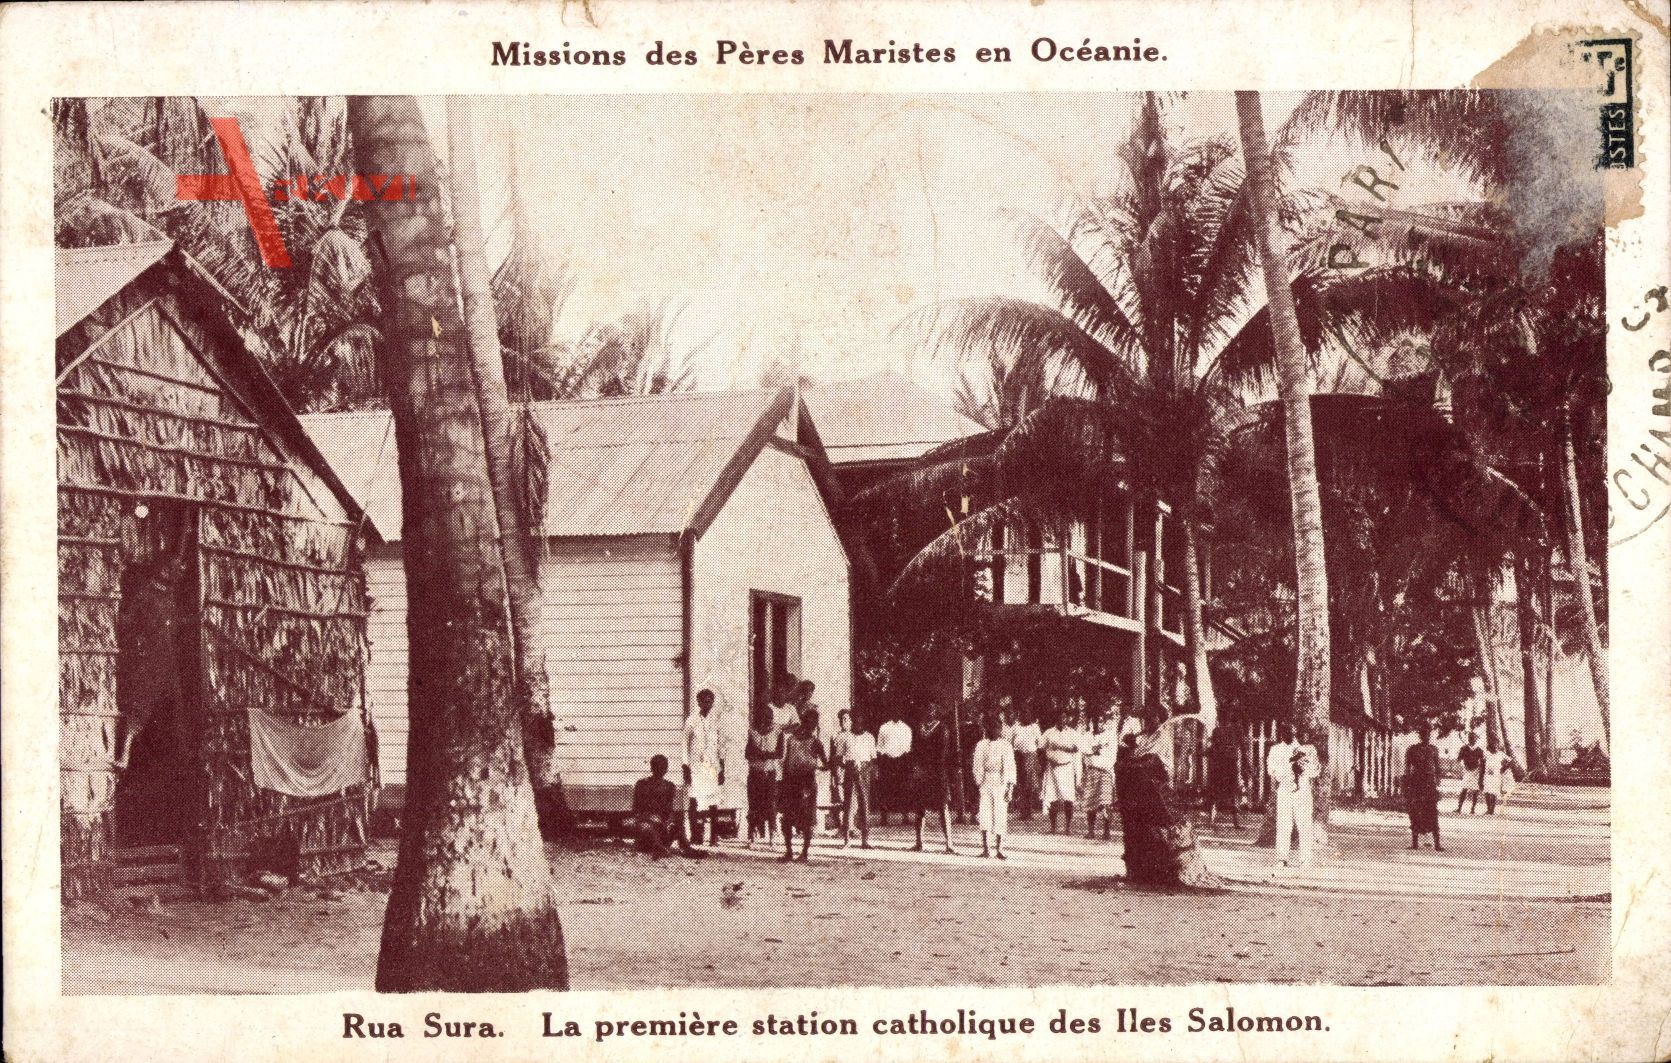 Rua Sura Salomonen, La première station catholique, Missions Maristes